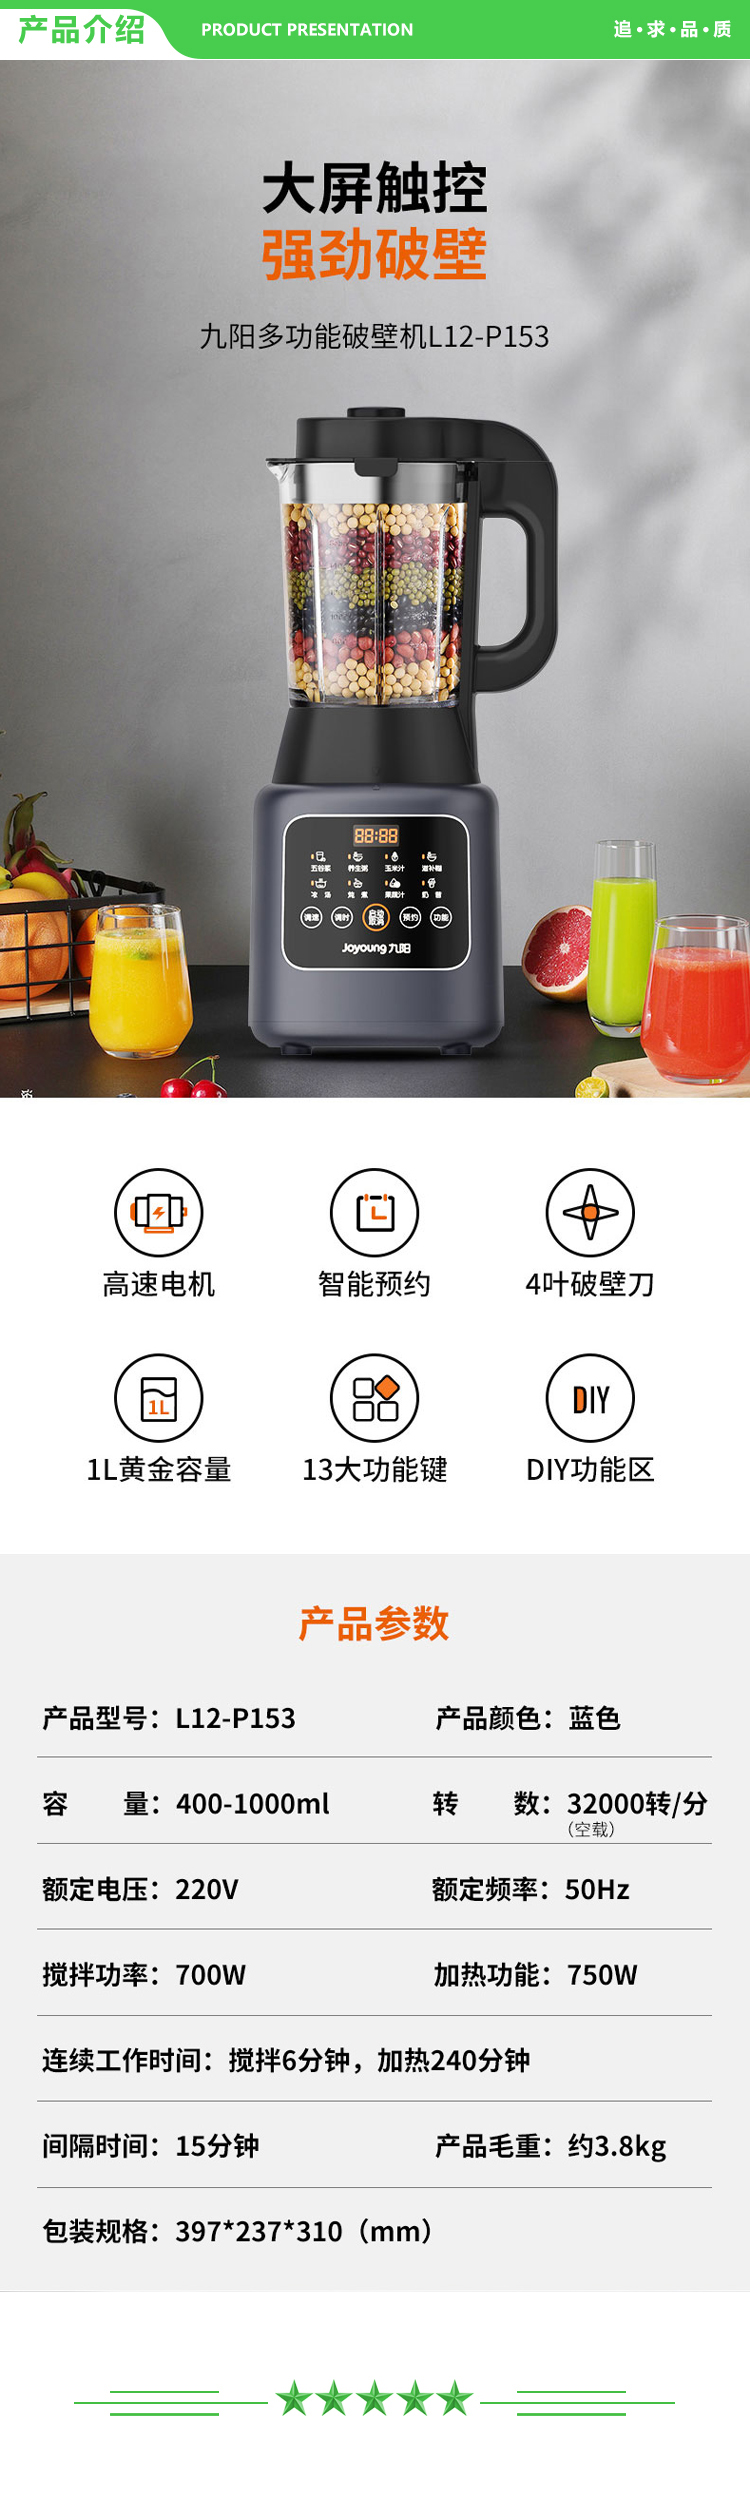 九阳 Joyoung L12-P153 破壁机 多功能双打豆浆机果蔬汁料理机.jpg